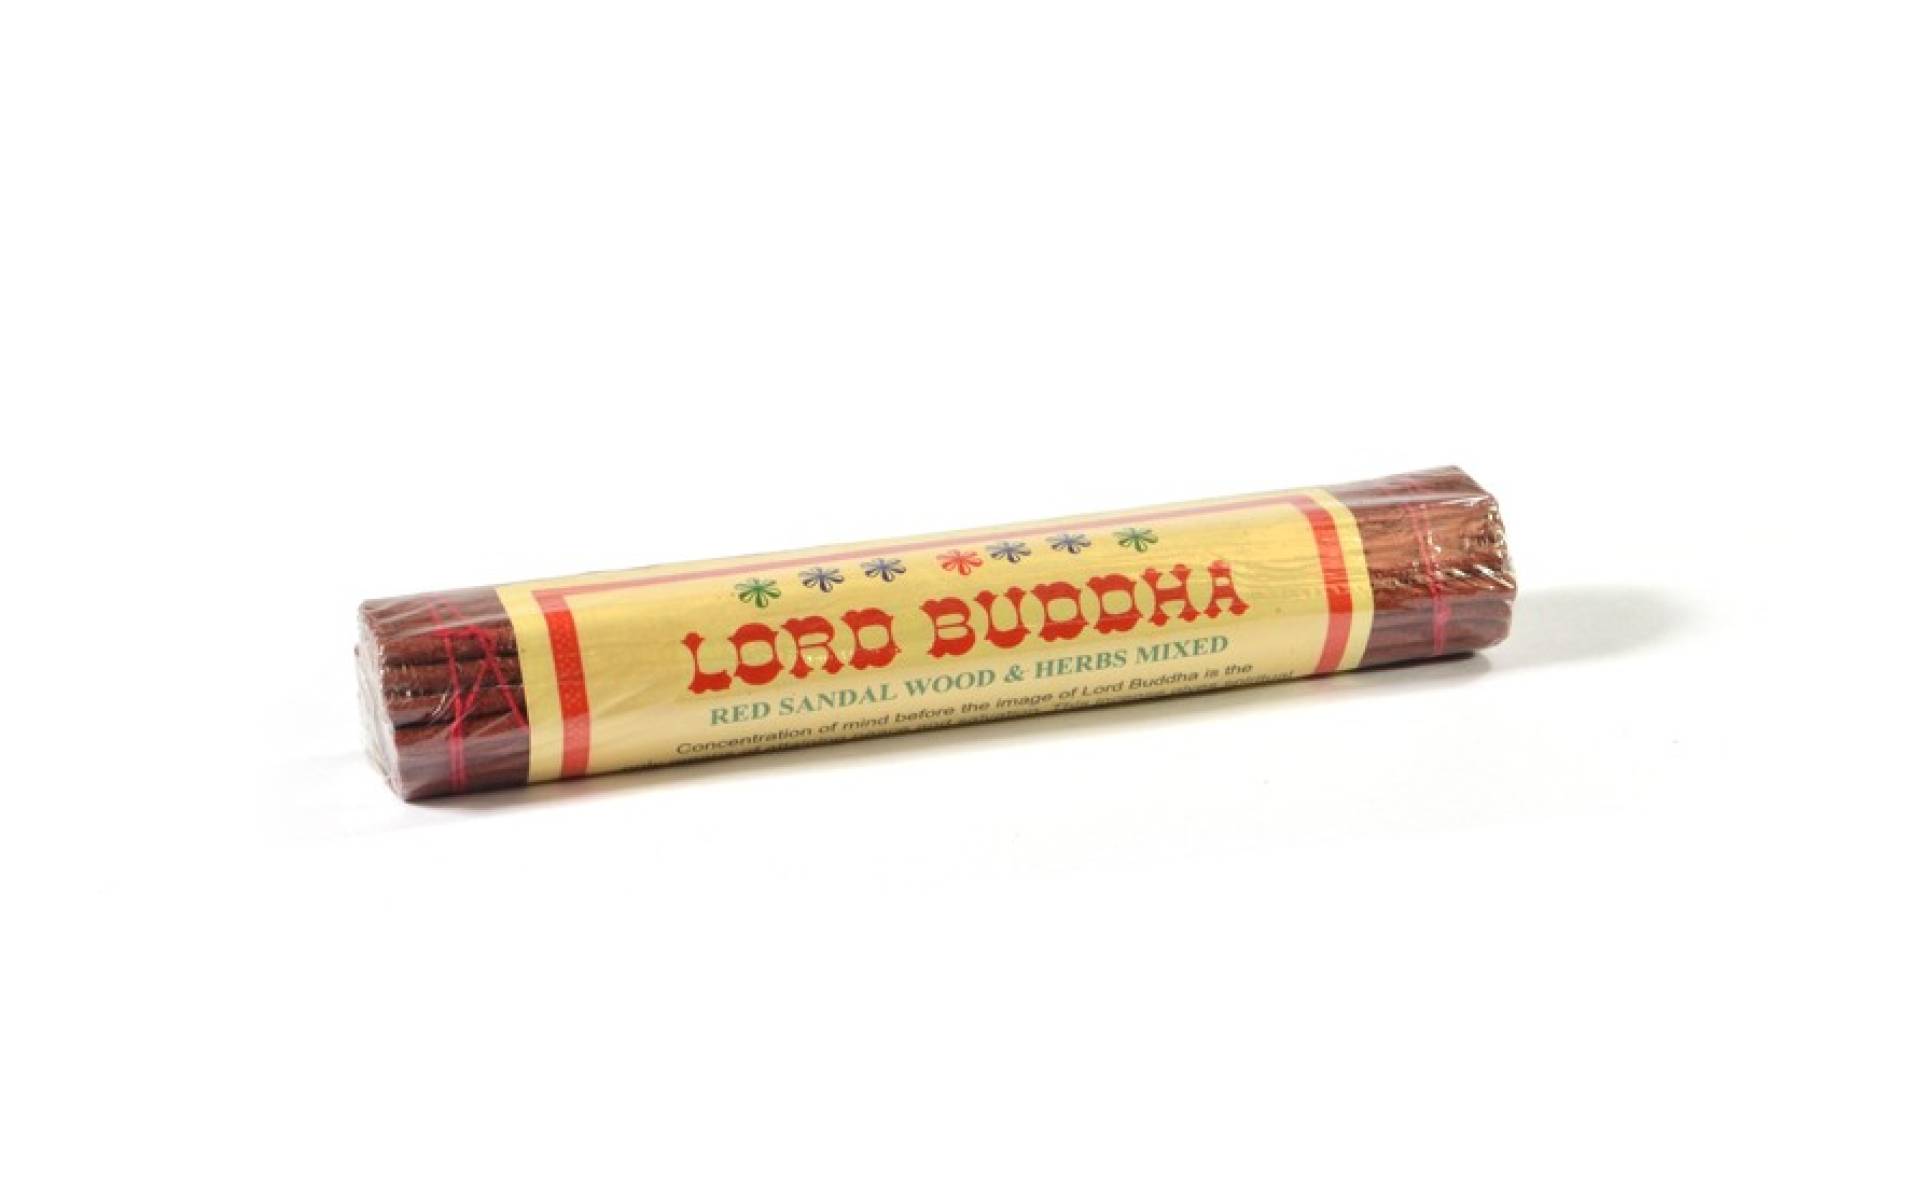 Tibetské vonné tyčinky "Lord Budha", Red Sandal Wood & Herbs